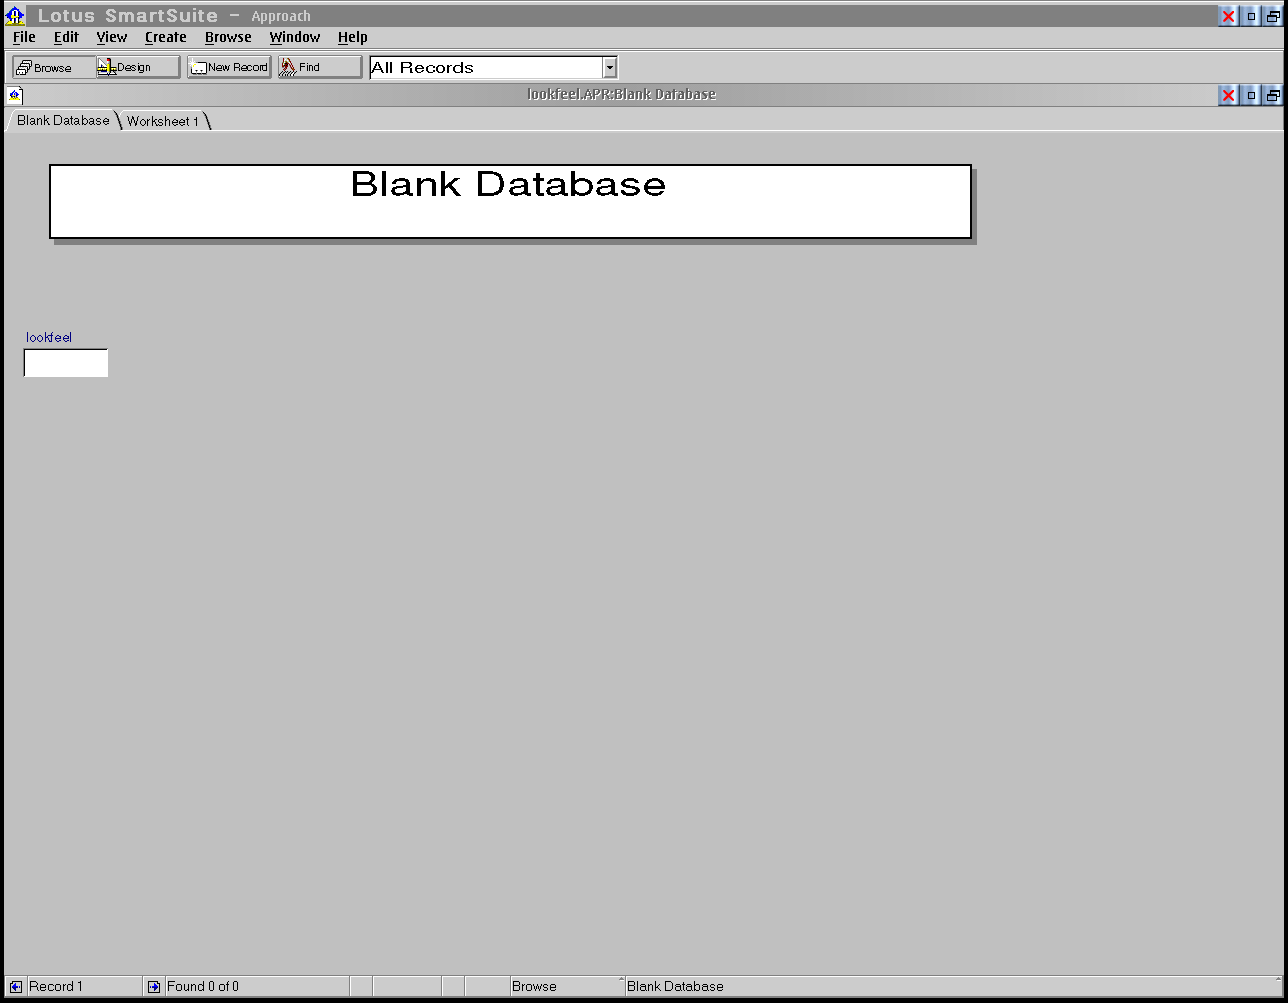 Blank database mask